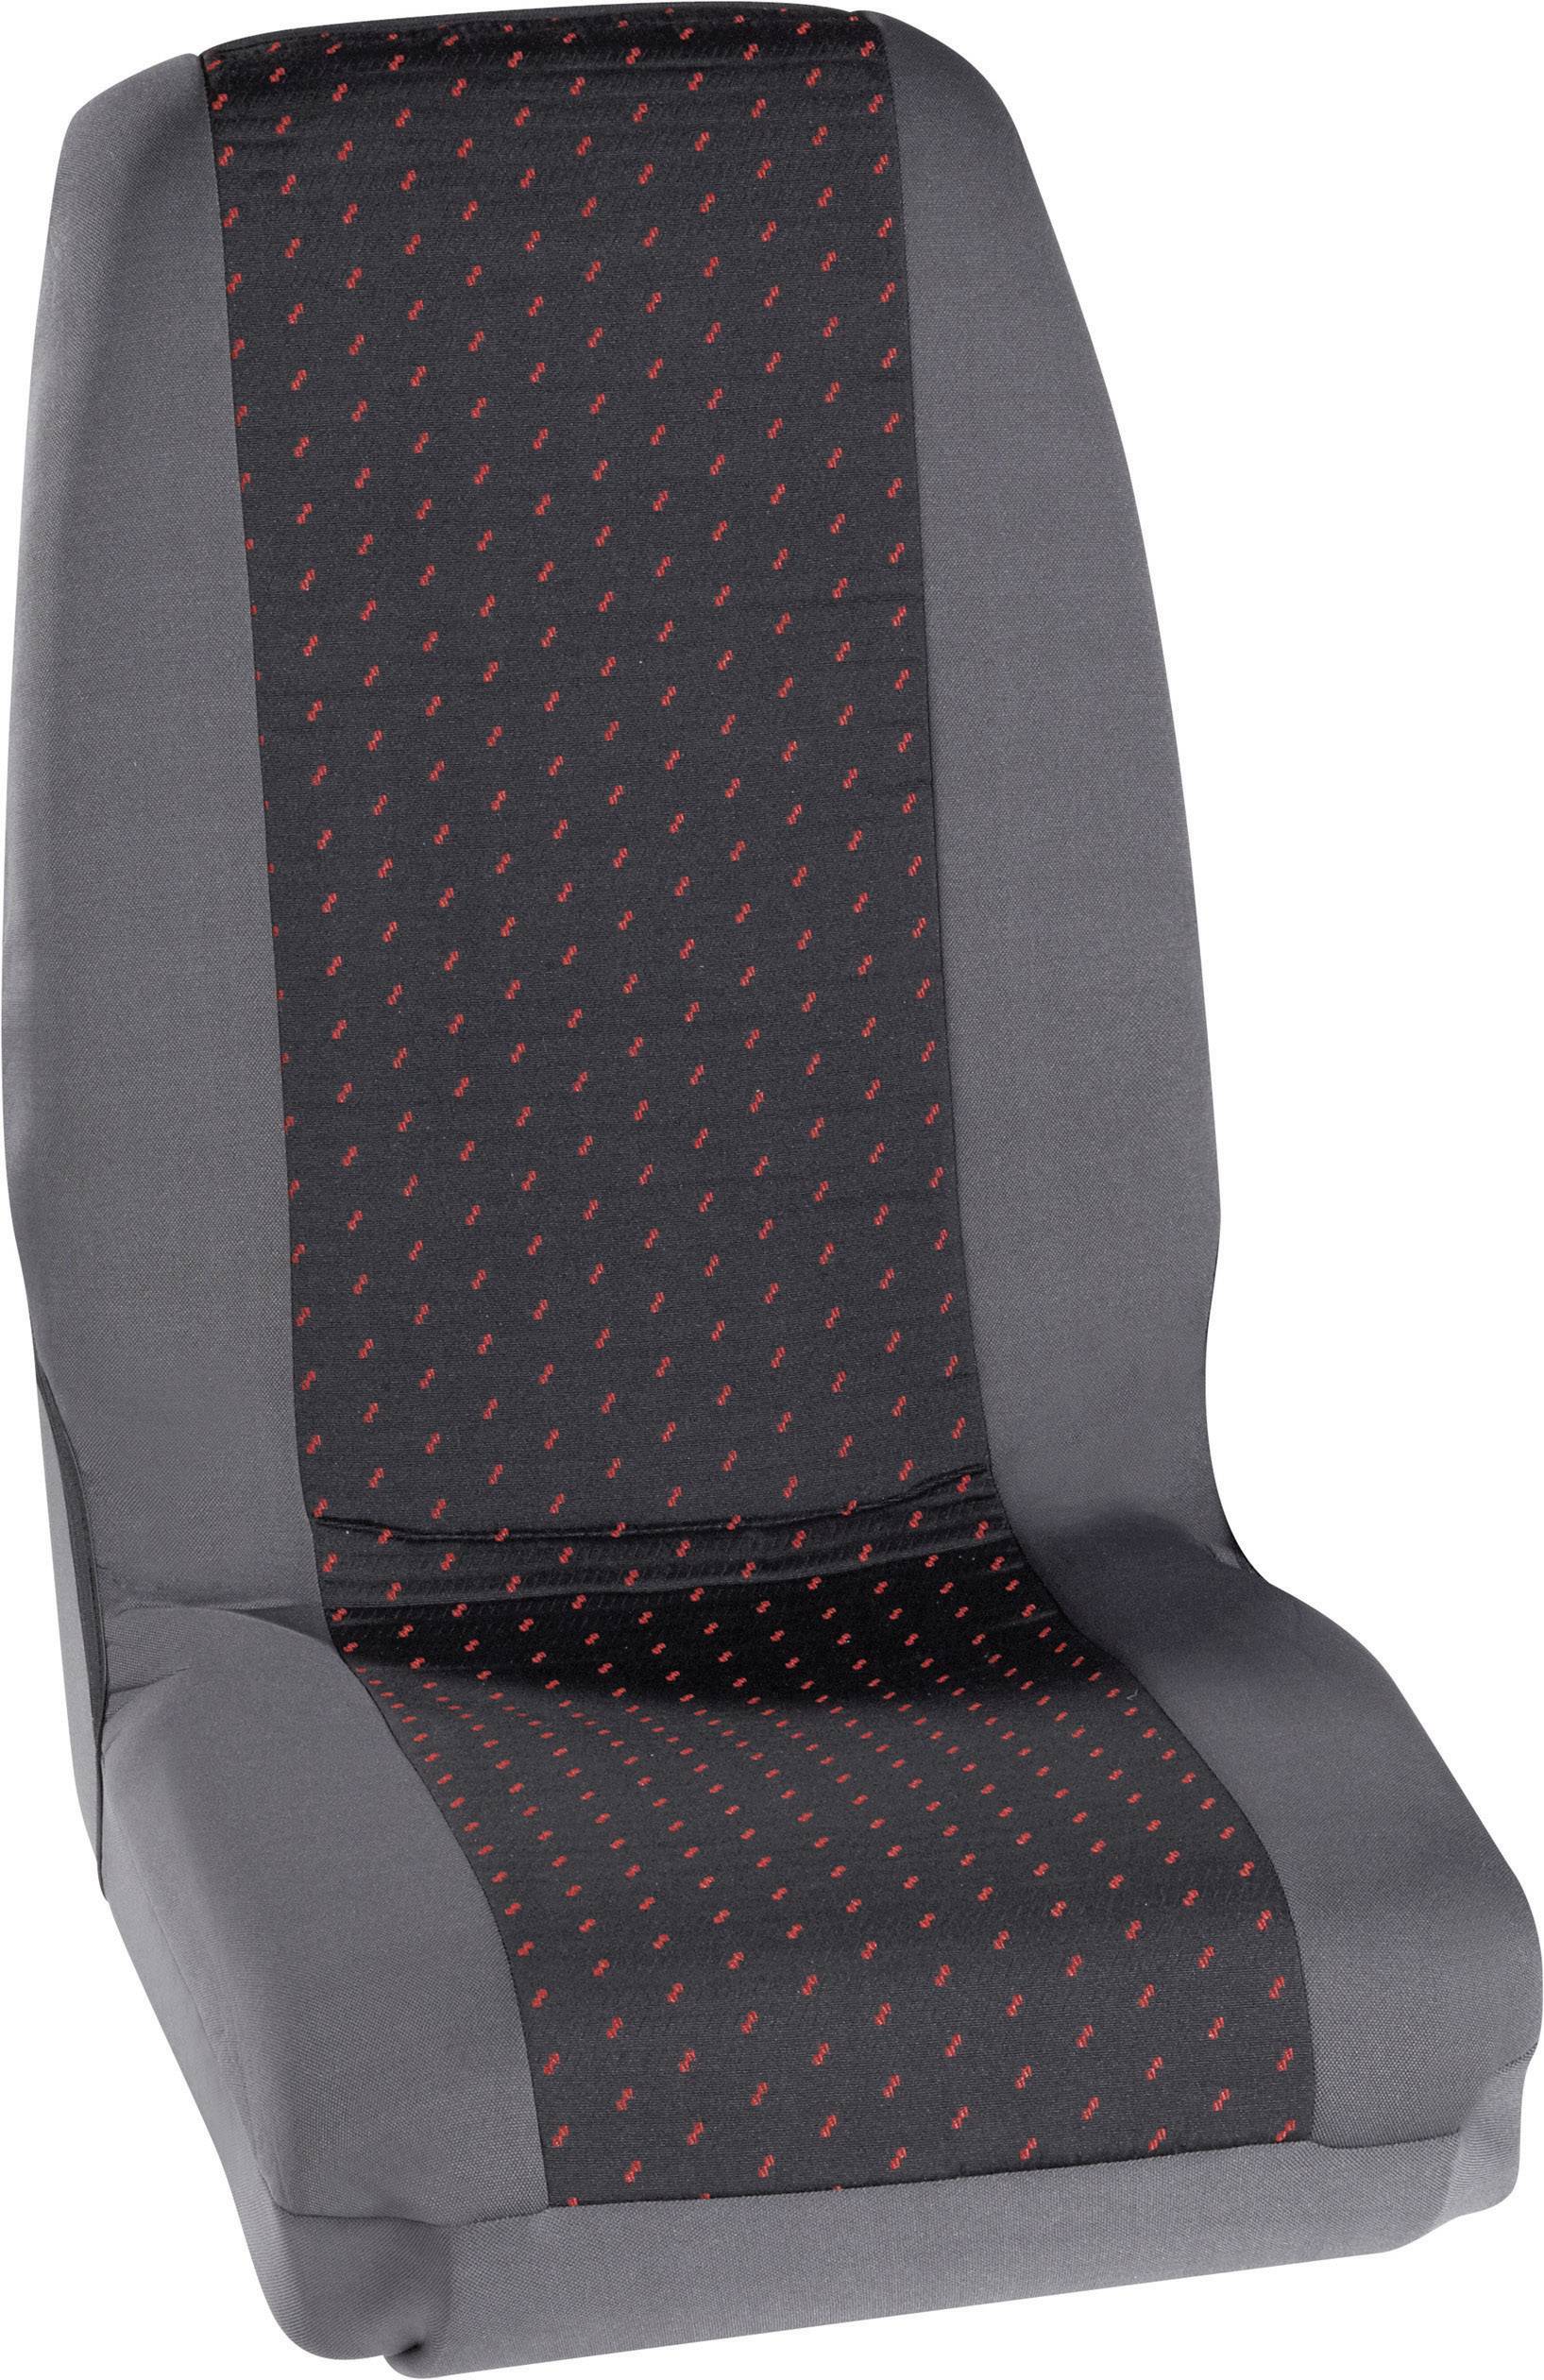 Petex 30070012 Profi 1 Sitzbezug 4teilig Polyester Rot, Anthrazit  Fahrersitz, Beifahrersitz – Conrad Electronic Schweiz